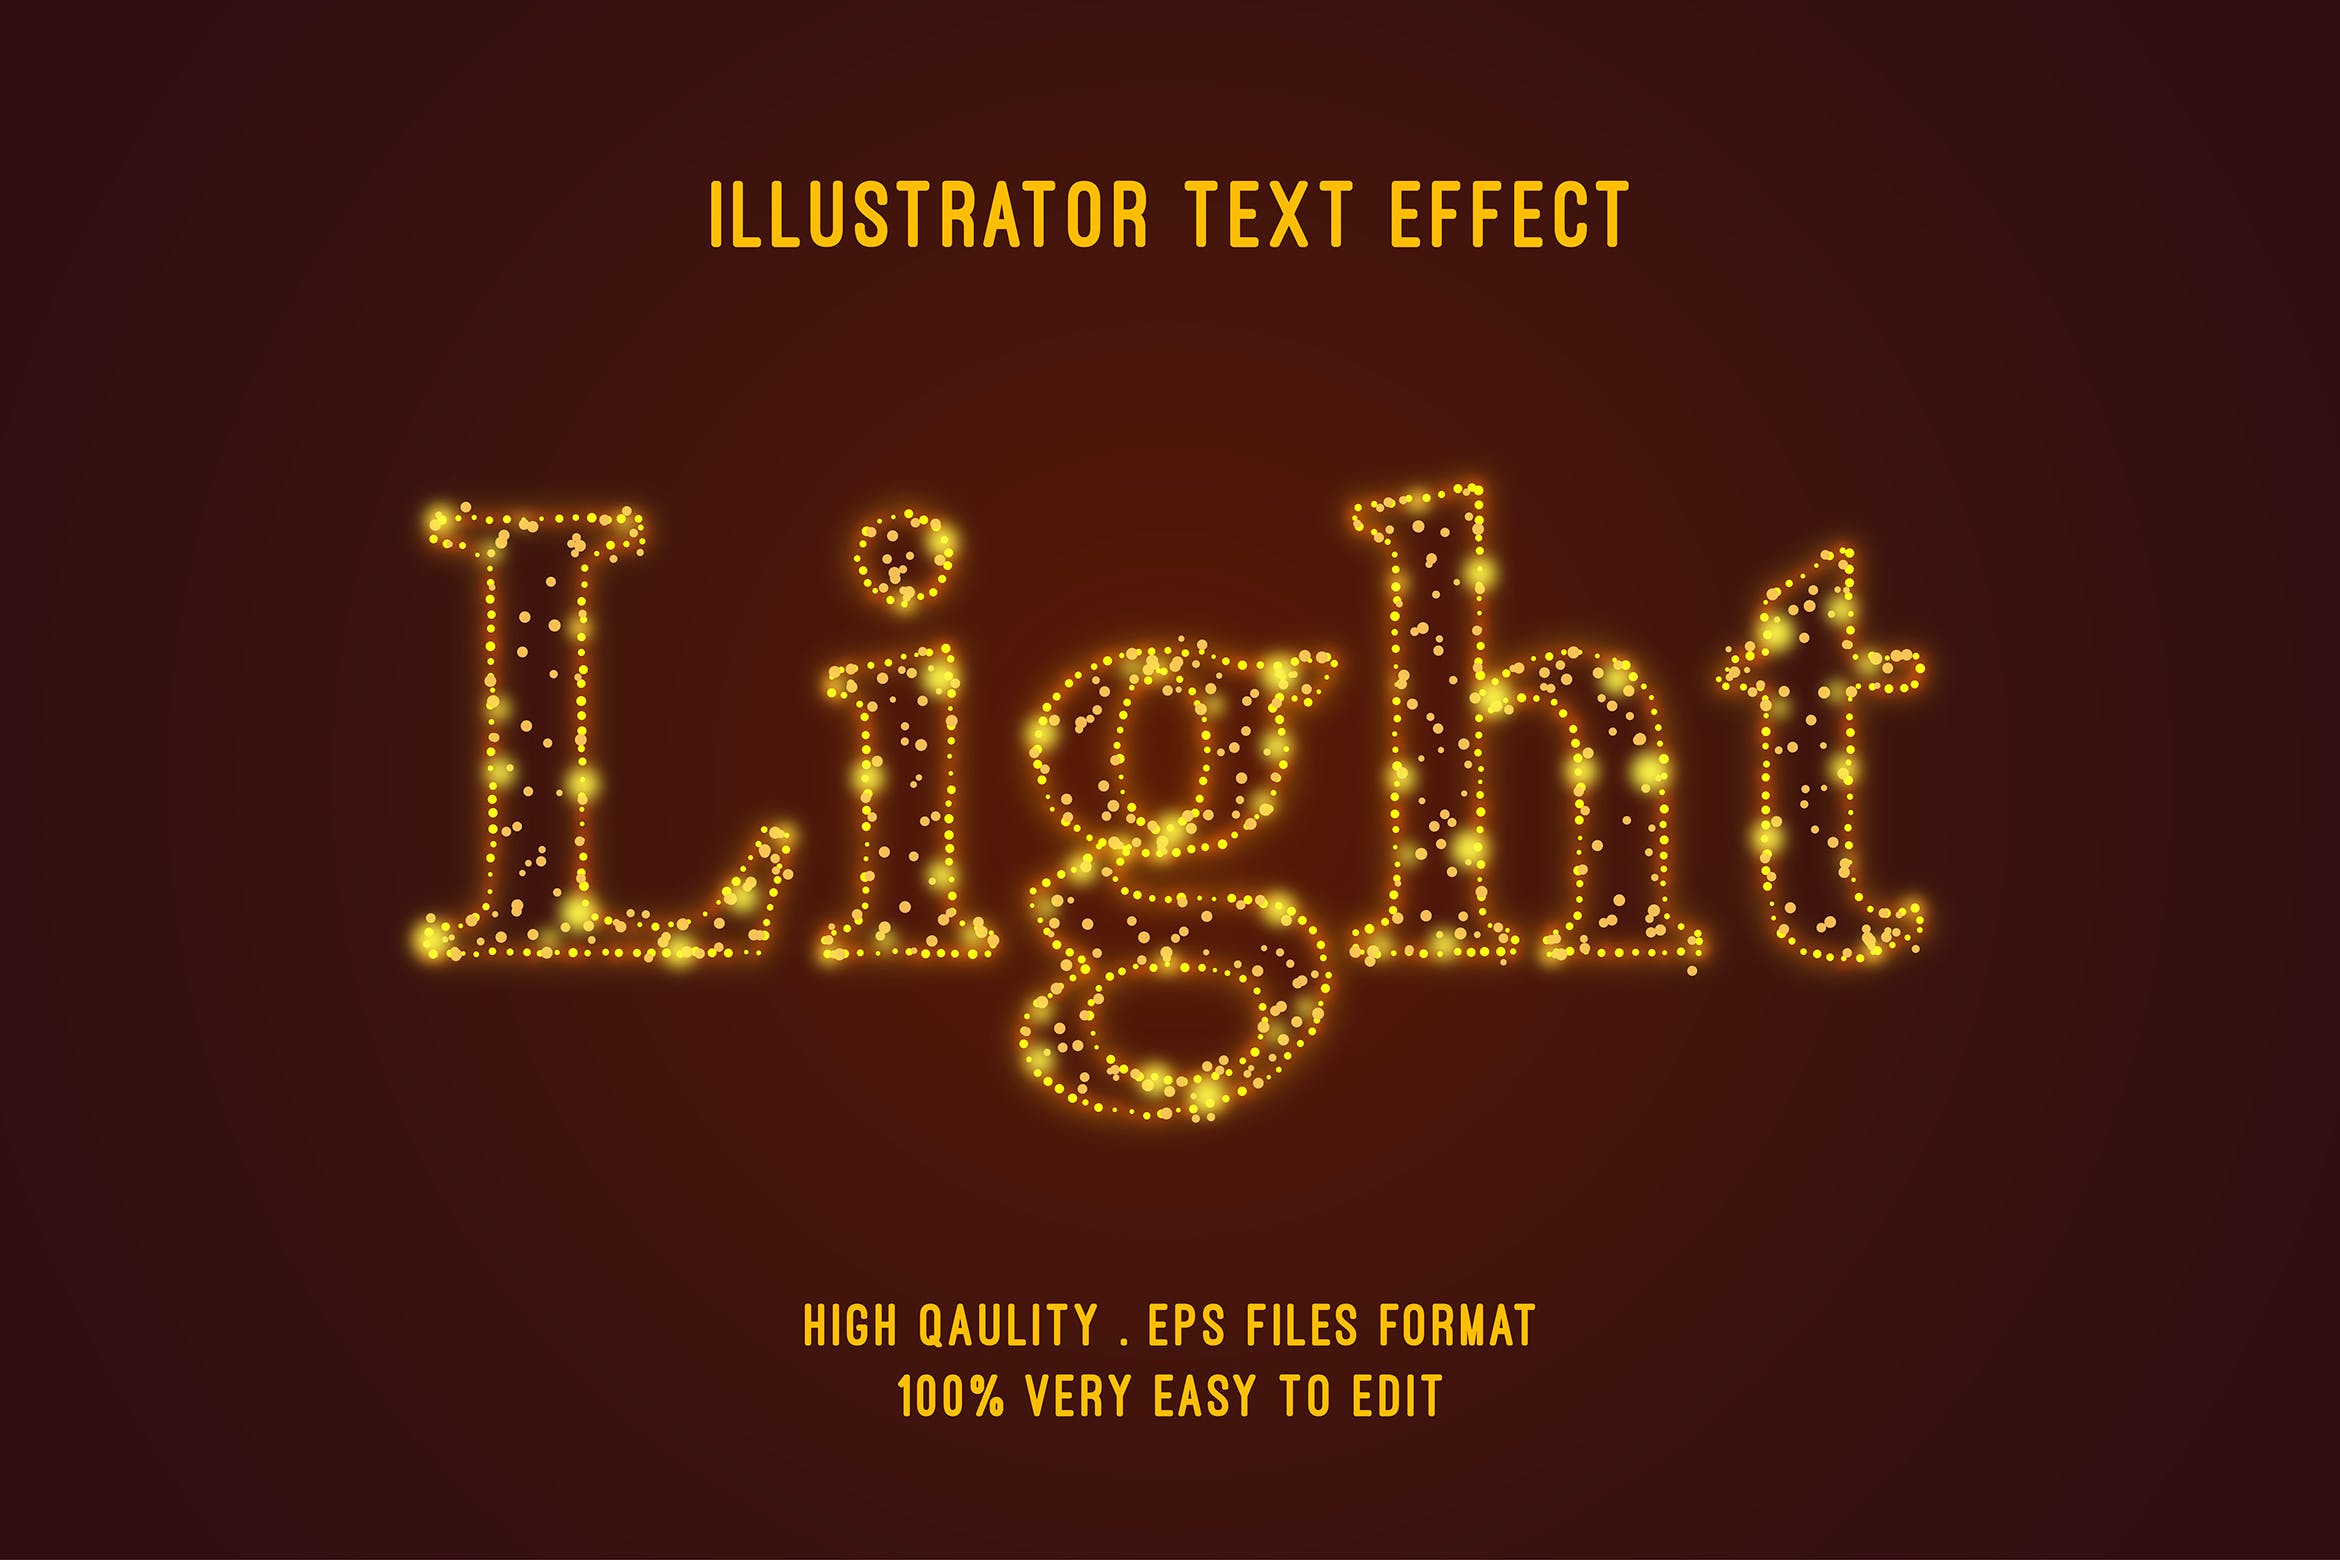 闪光文字效果字体样式矢量素材 Flash – editable text effect, font style – 设计小咖